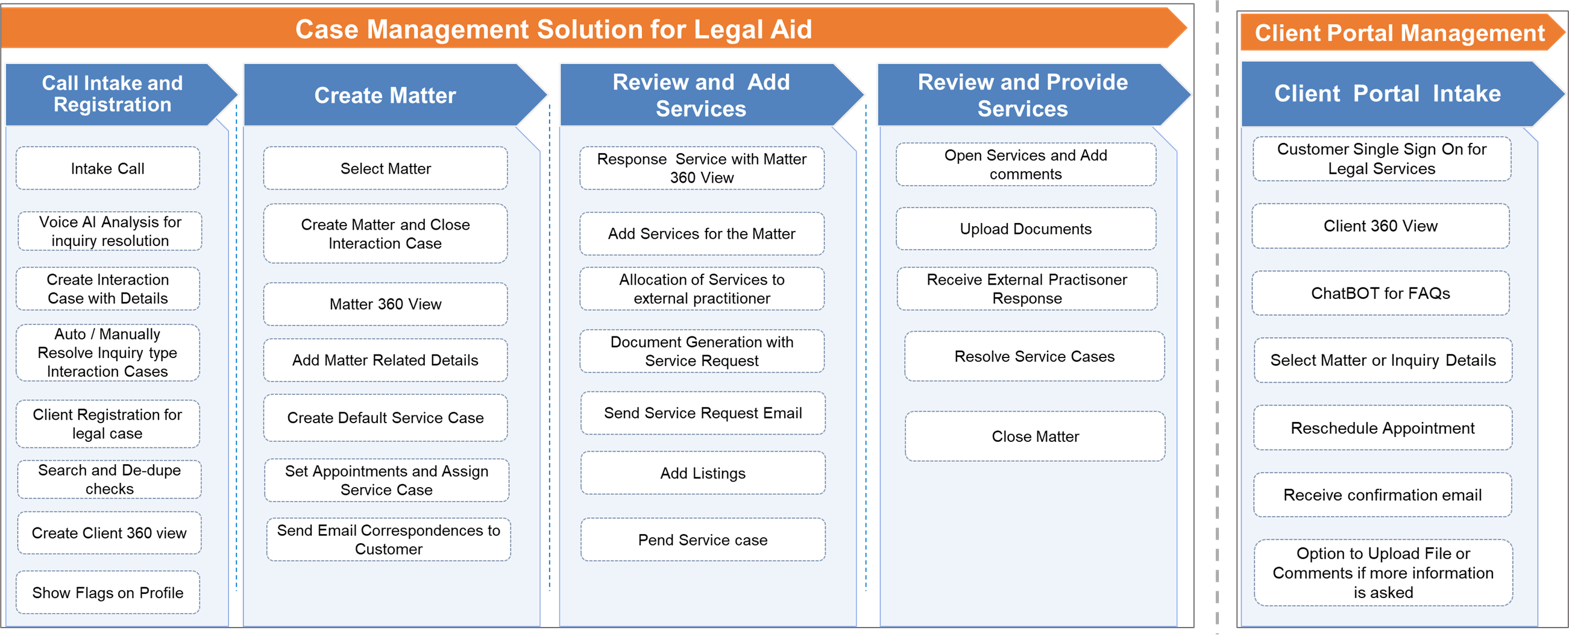 Legal Aid Case Management Solution